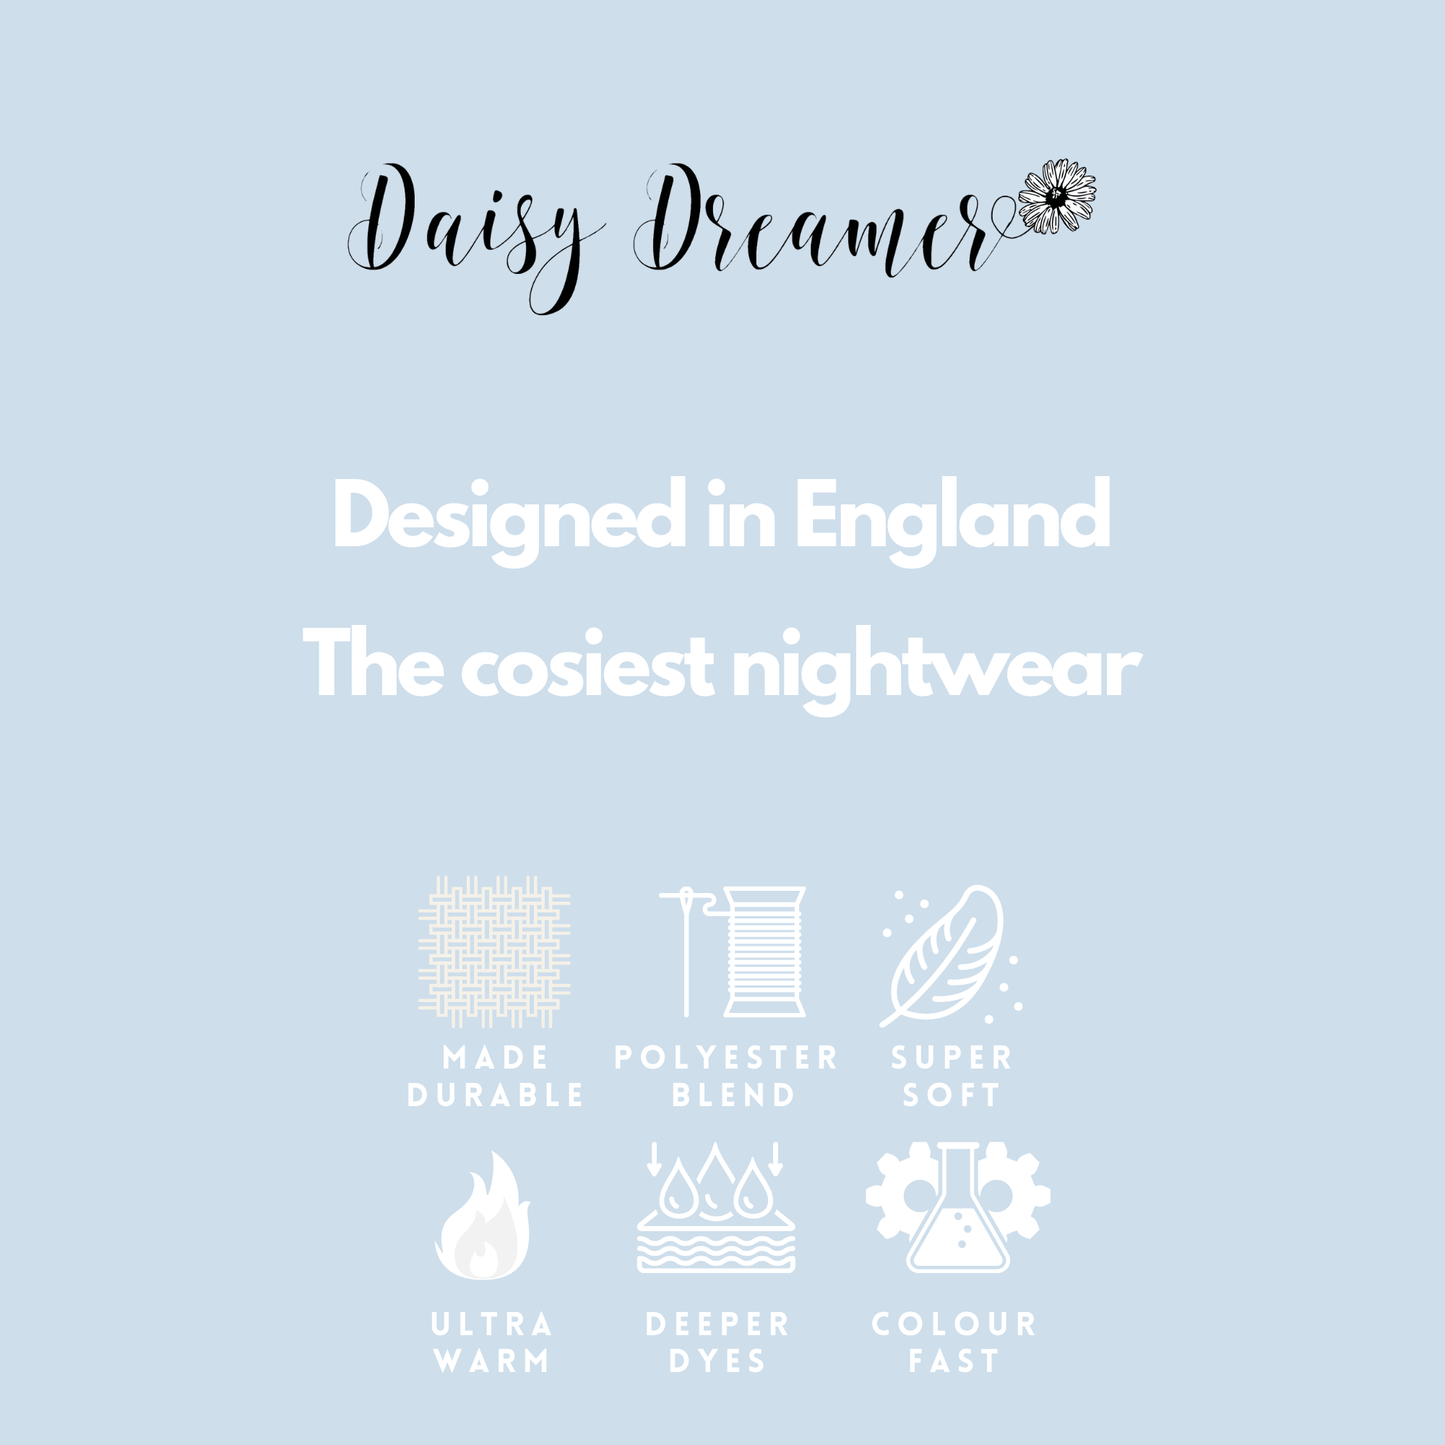 Women's Stars Plush Fleece Hooded Pyjama Set, Ladies Loungewear Set. Buy now for £20.00. A Pyjamas by Daisy Dreamer. 12-14, 16-18, 20-22, 8-10, blue, bridesmaid, flannel, fleece, grey, gym, hooded, hotel, ladies, large, loungewear, medium, navy, nightwear